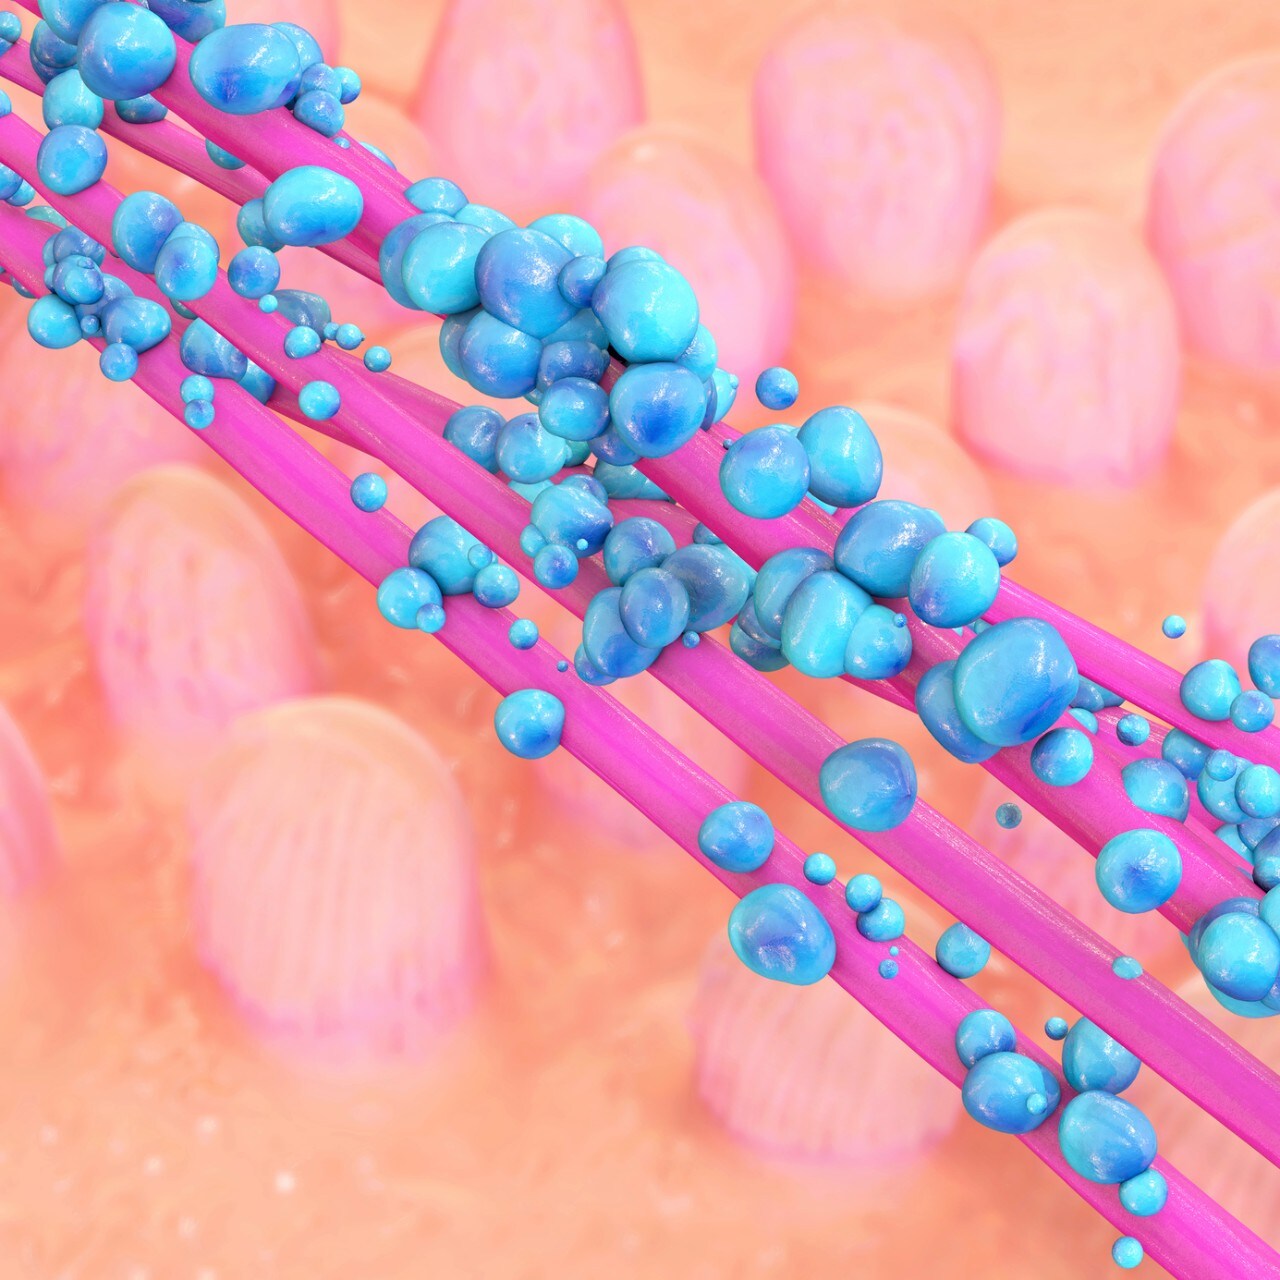 Gut bacteria - 3d rendered illustration